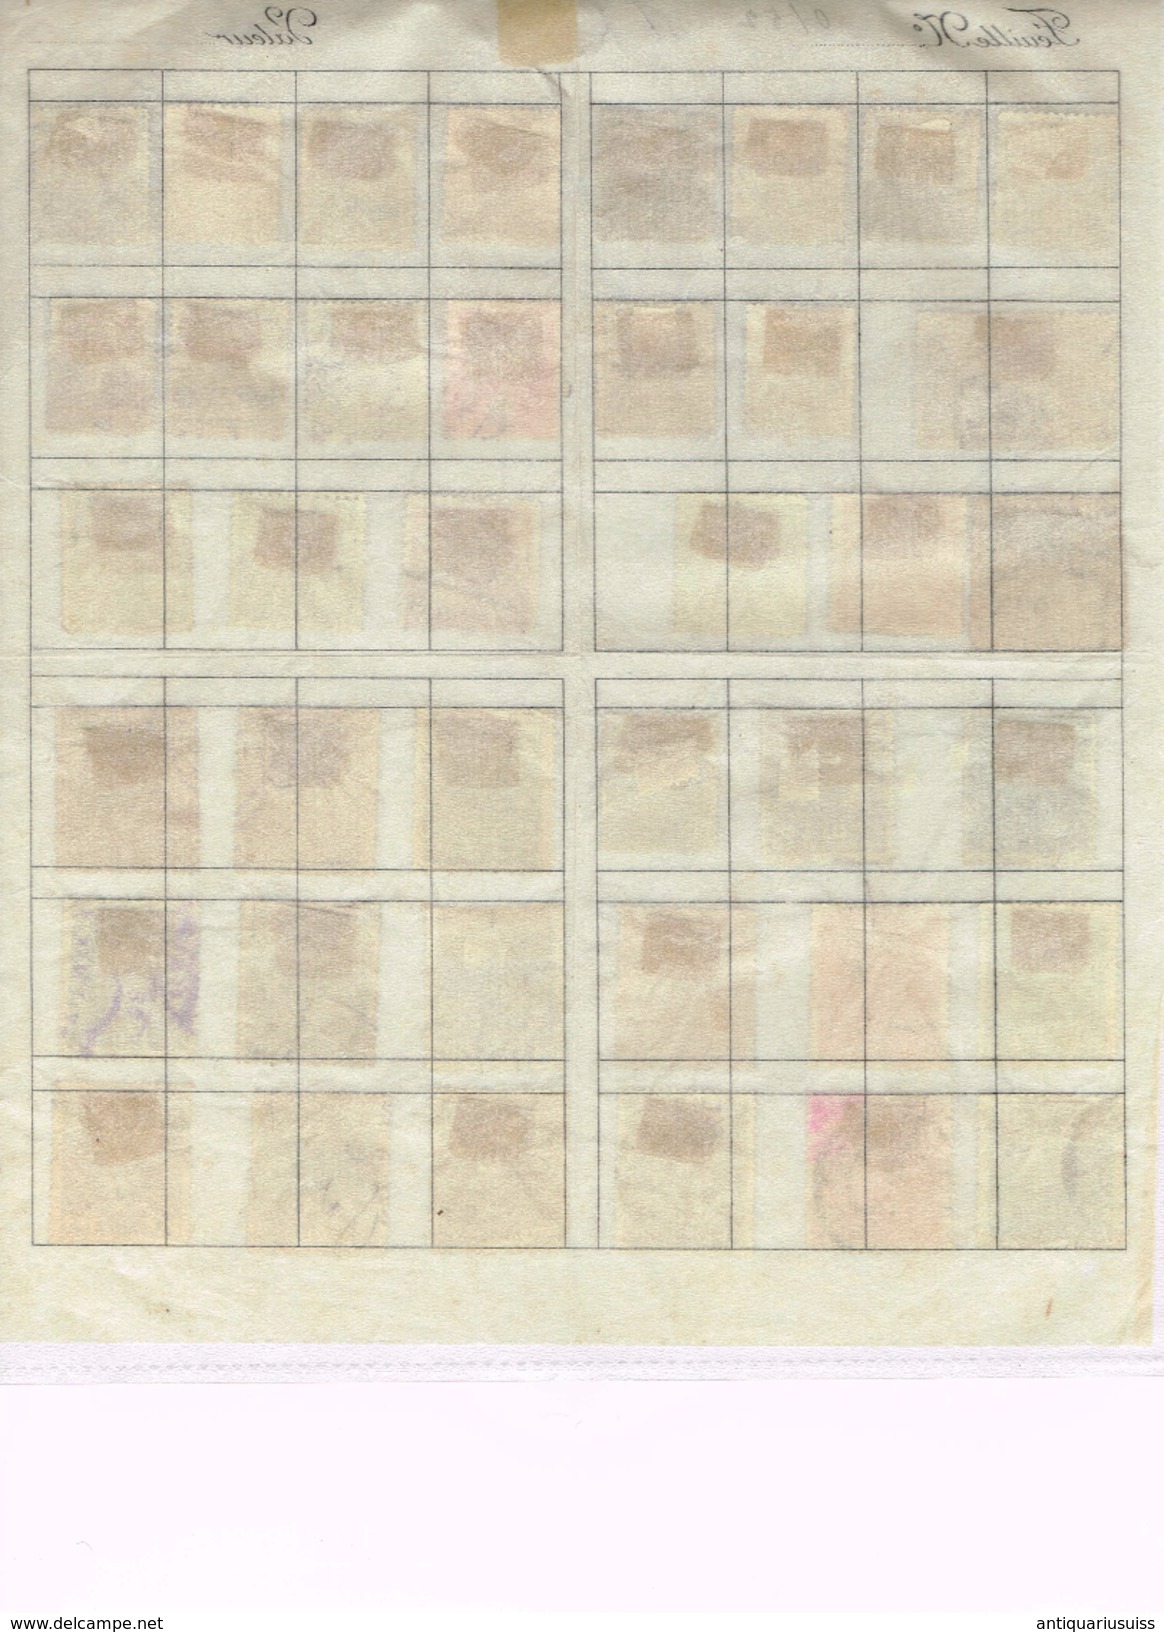 39 Timbres/stamps-USA, Hongrie,Canada,Chile,Bosnie-Herzégovine,Osterreich,Österreich-Ungarn,Nastanak Kraljevine,SHS - Collections (en Albums)